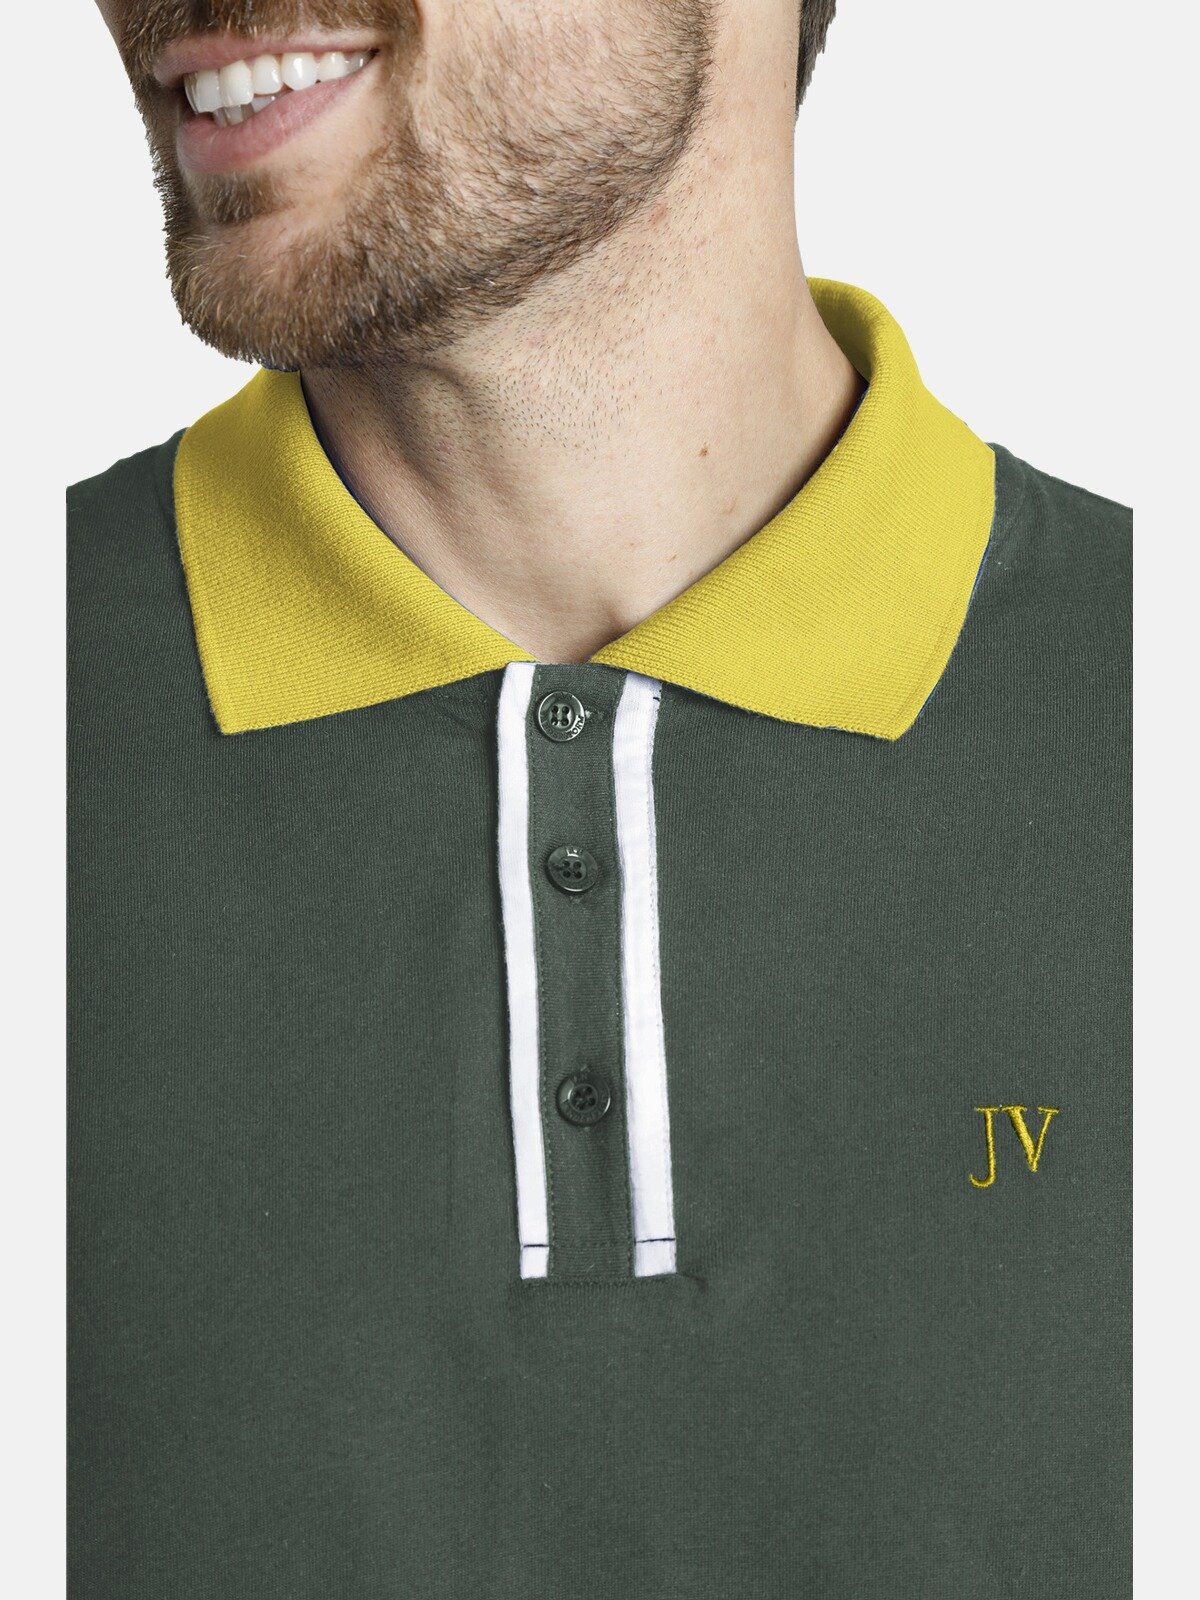 ISFRIED Jan grün Poloshirt Fit weiche Vanderstorm Comfort Baumwolle,